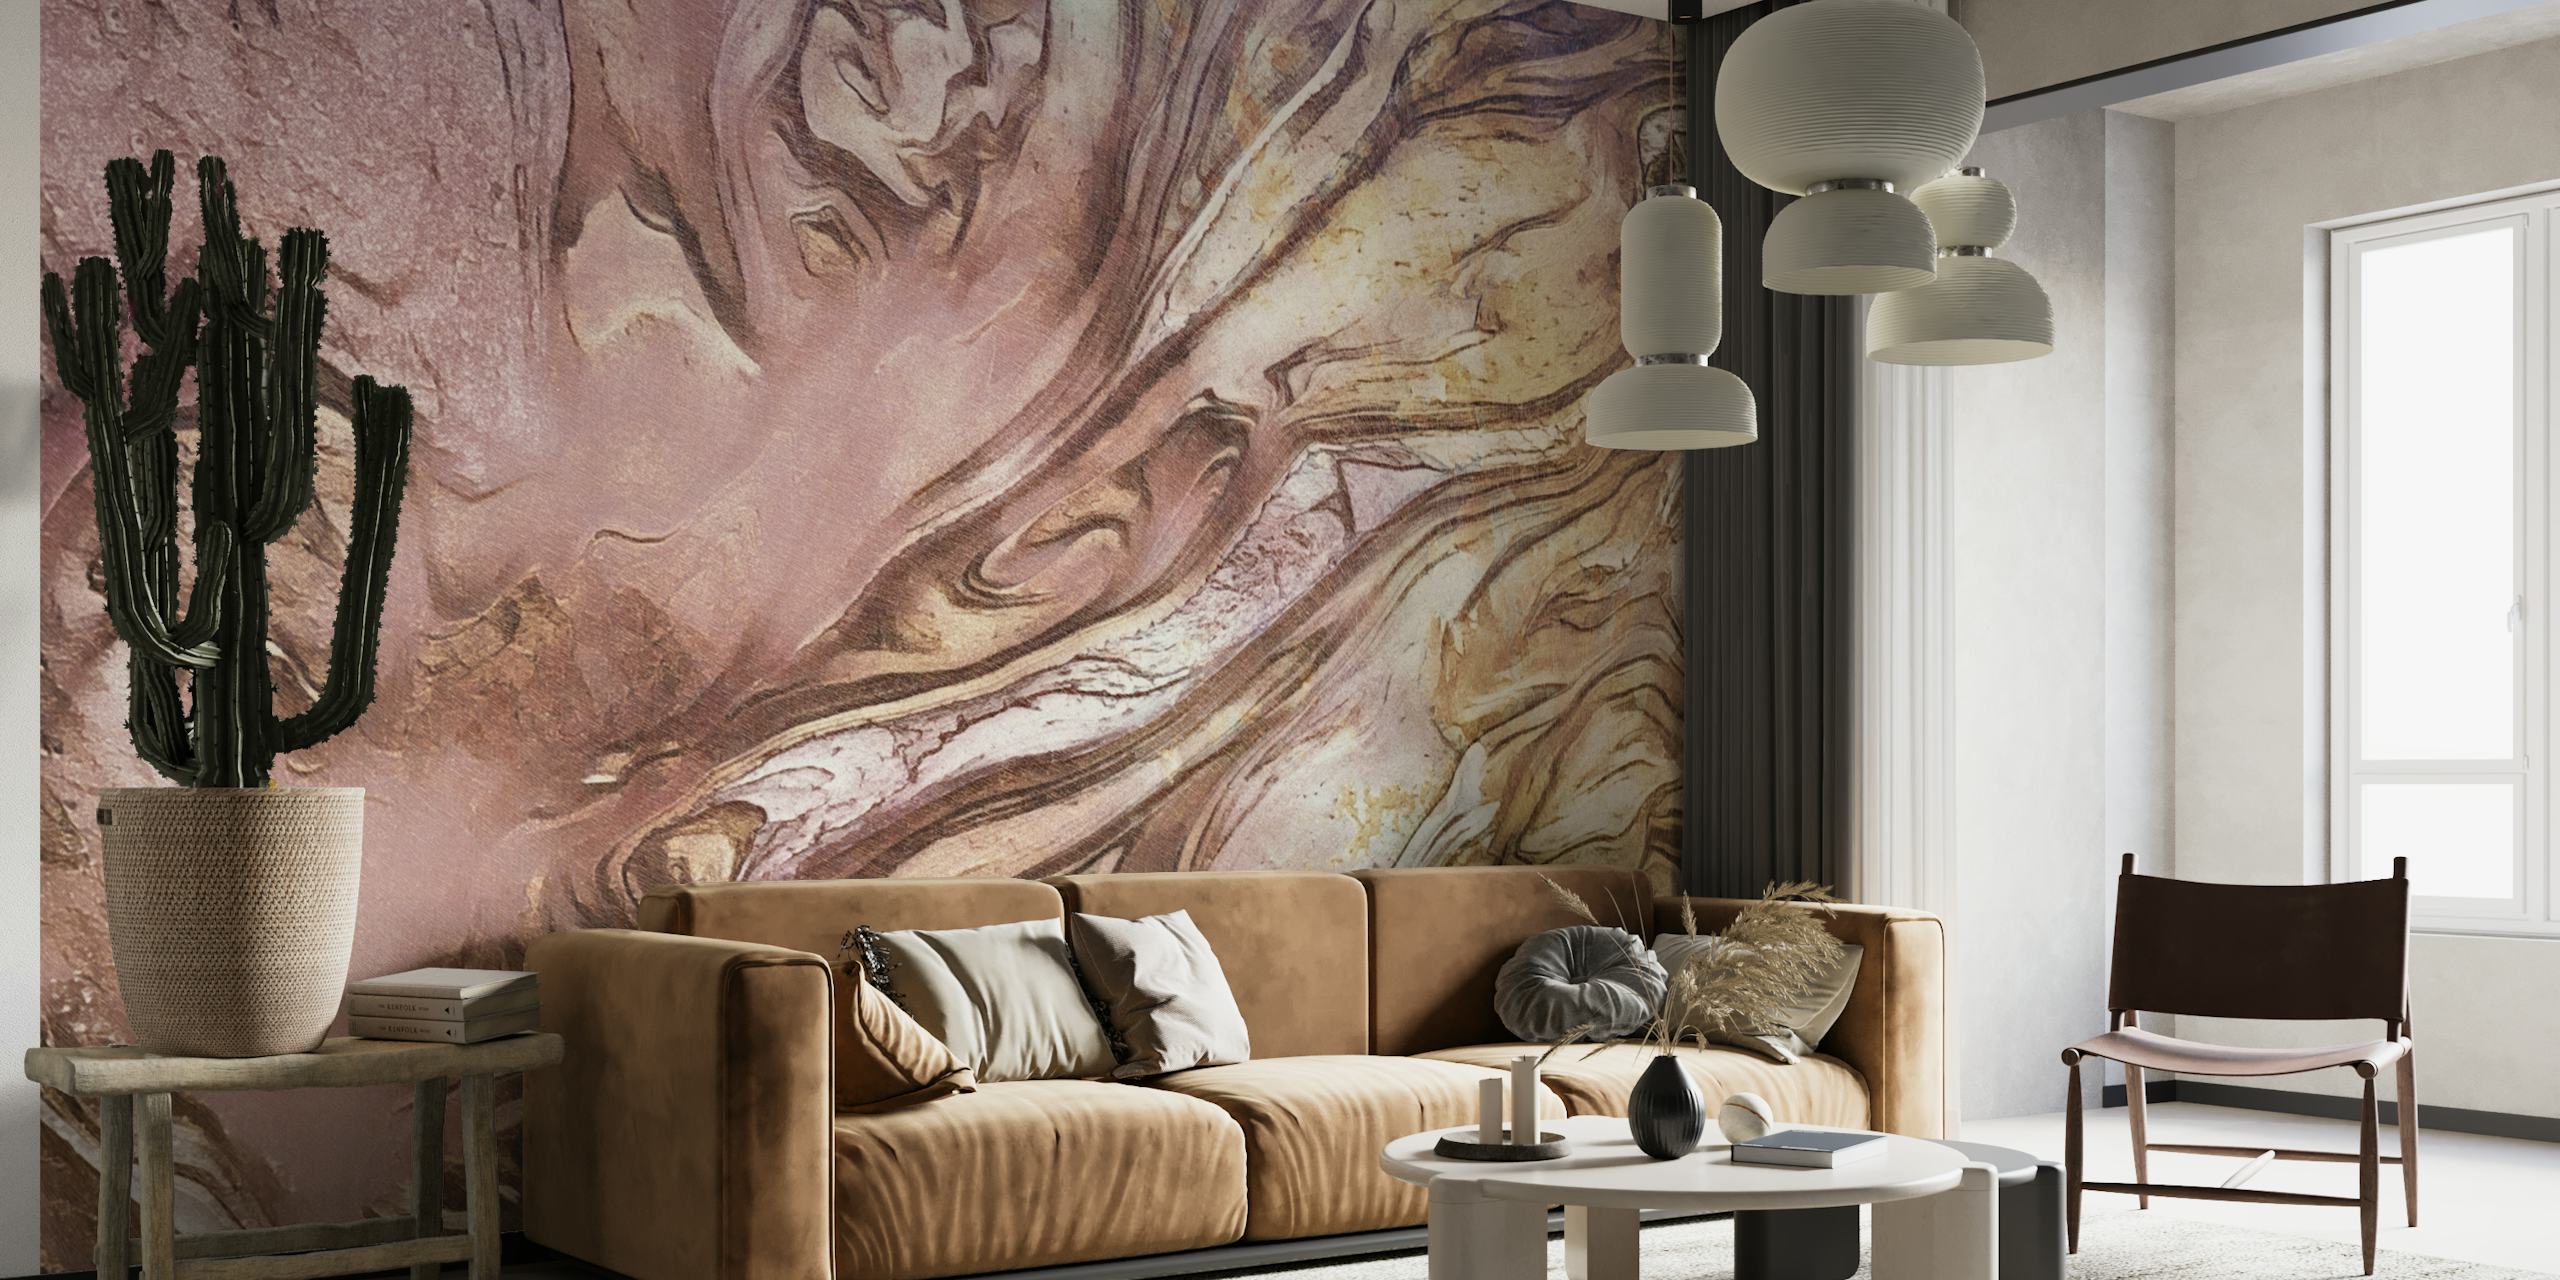 Fotomural vinílico de parede com redemoinhos em blush e dourado criando uma textura semelhante a um líquido